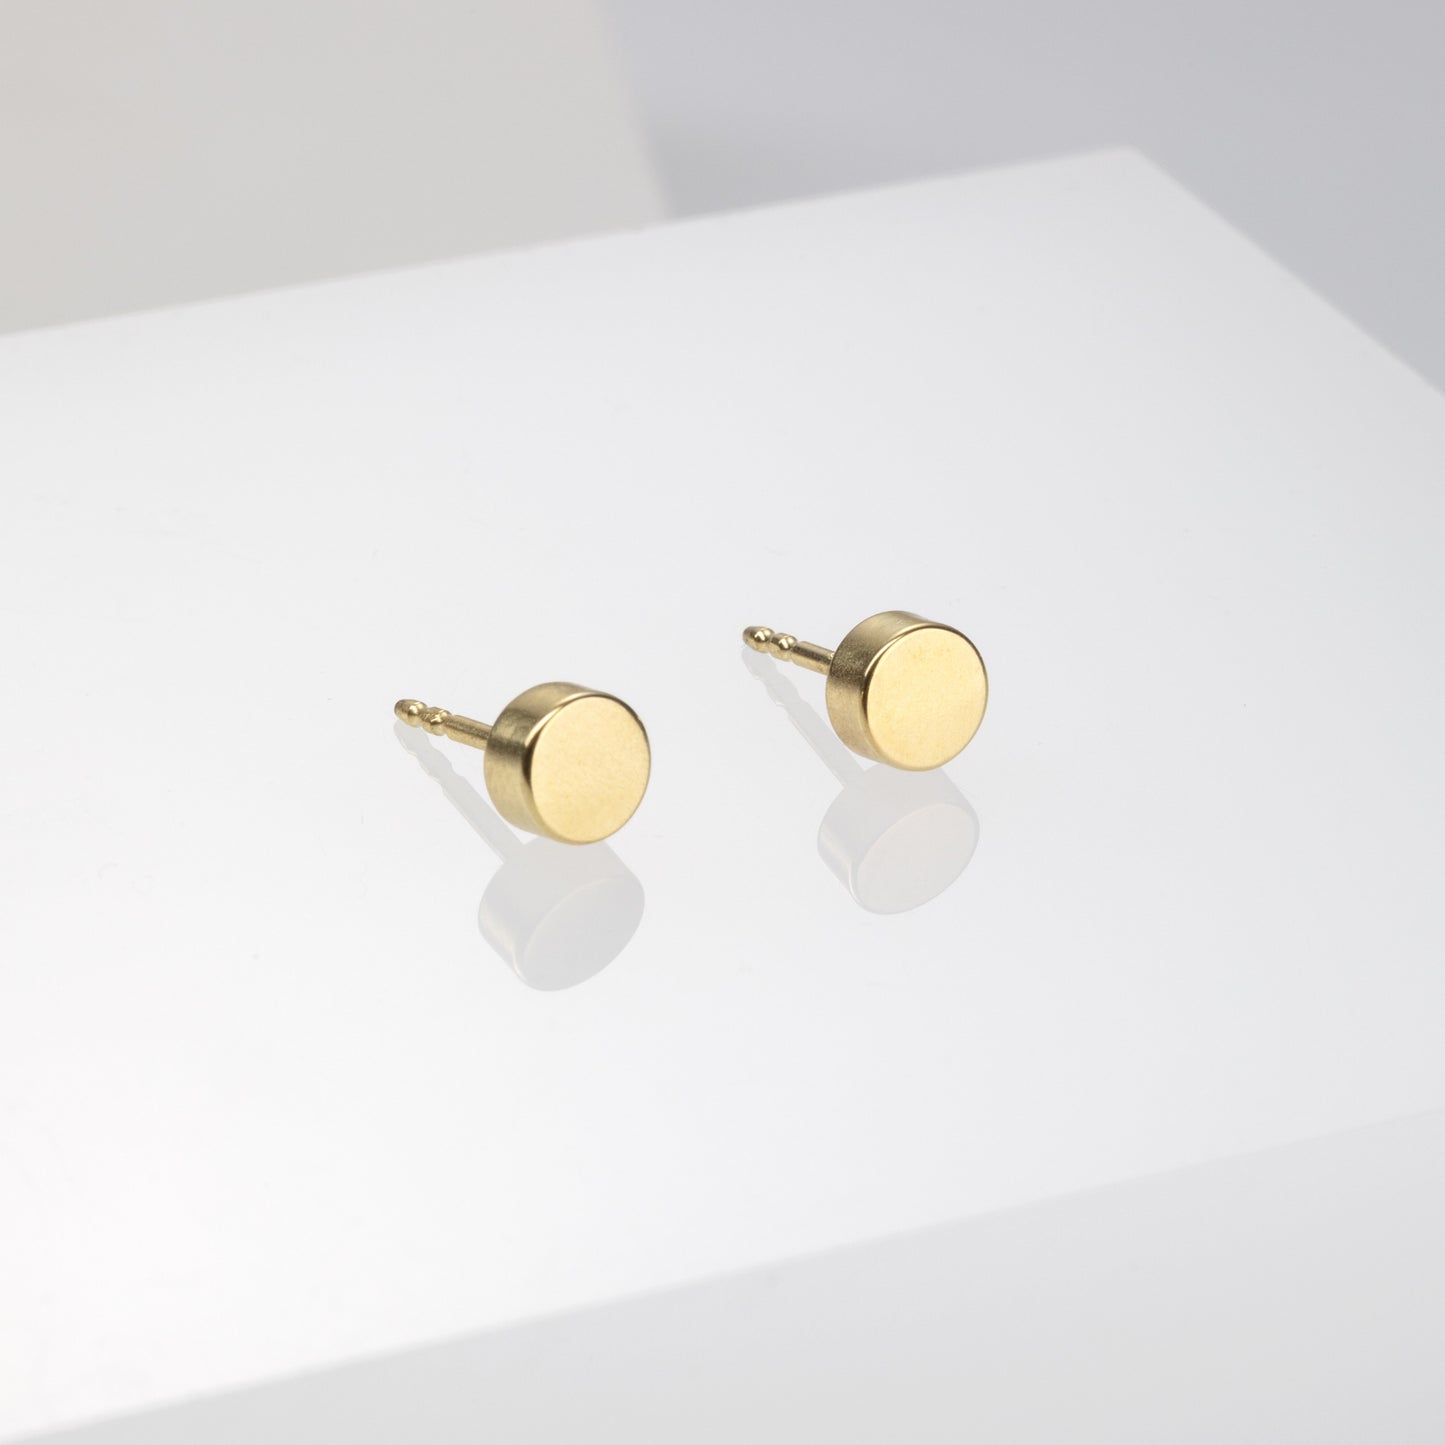 Kyō earrings DOTS small